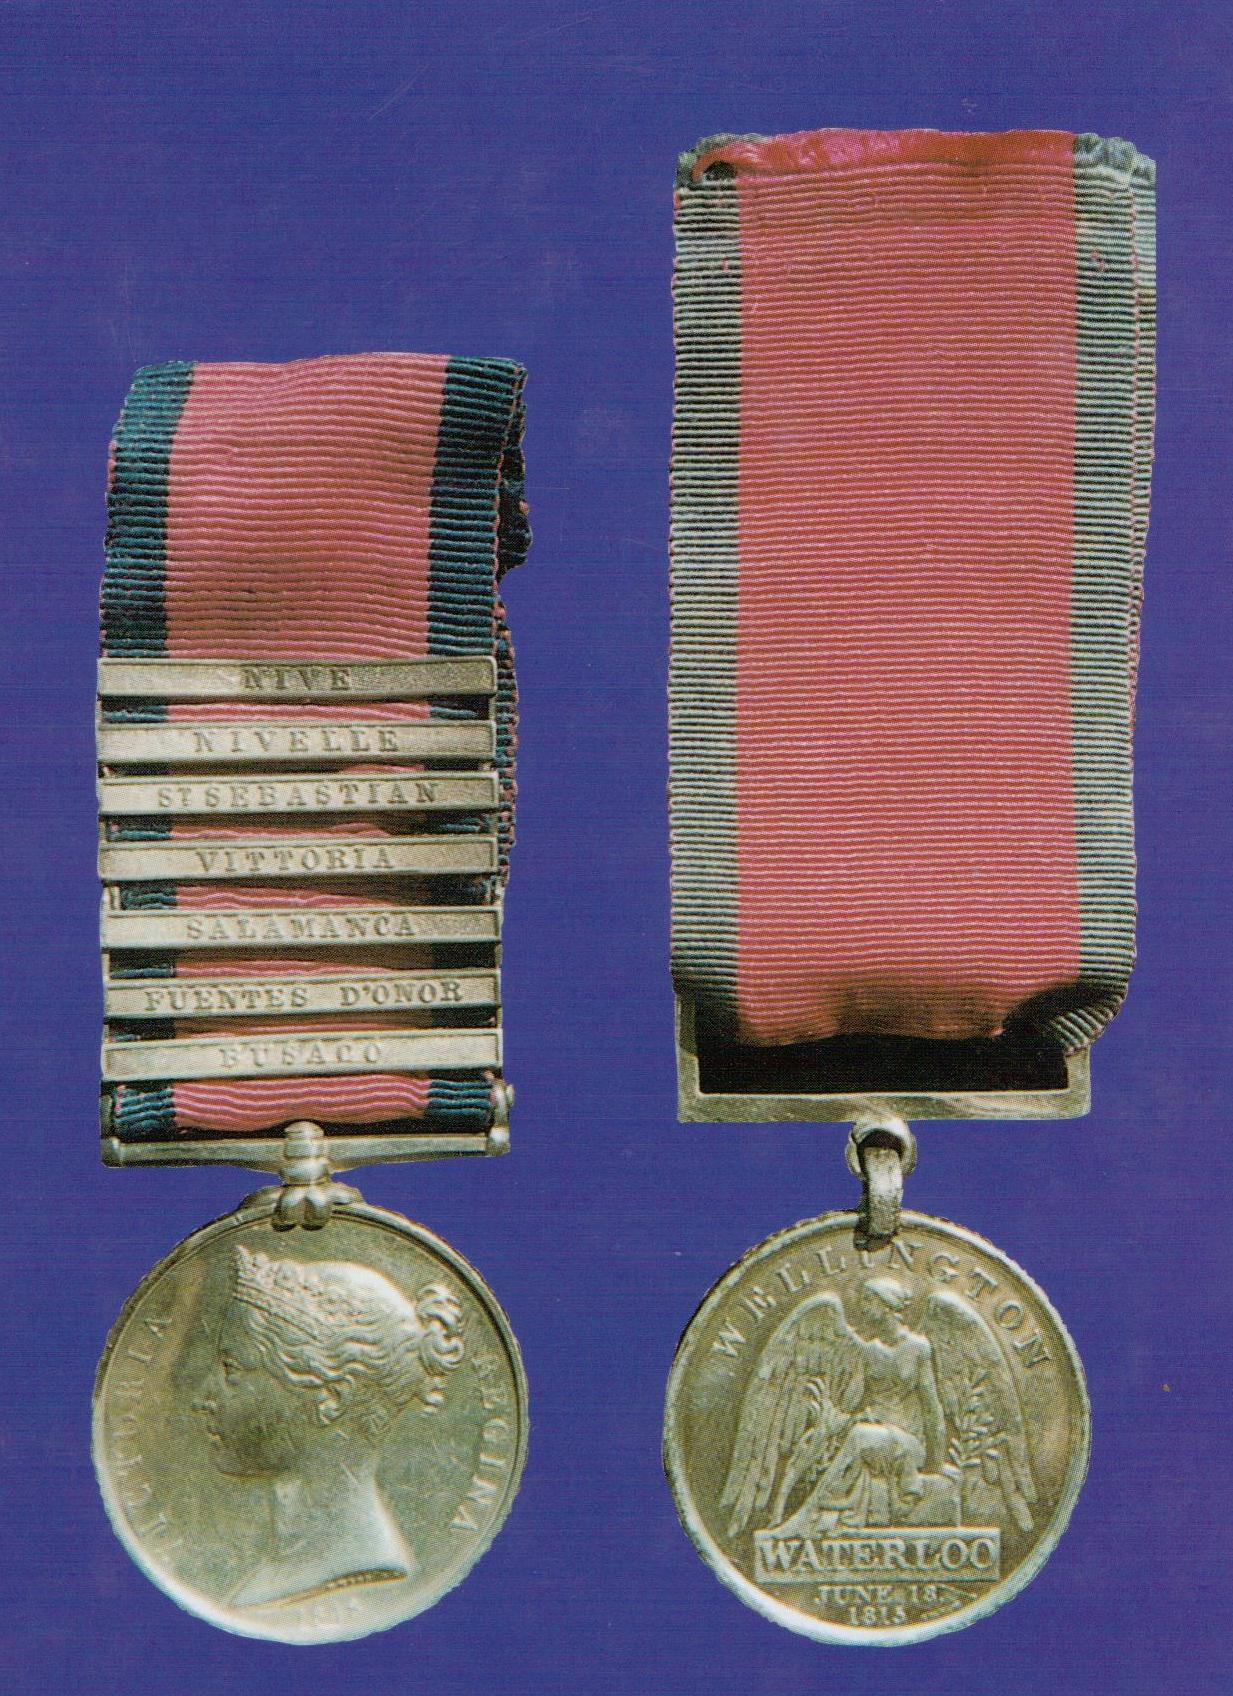 John Douglas' medals